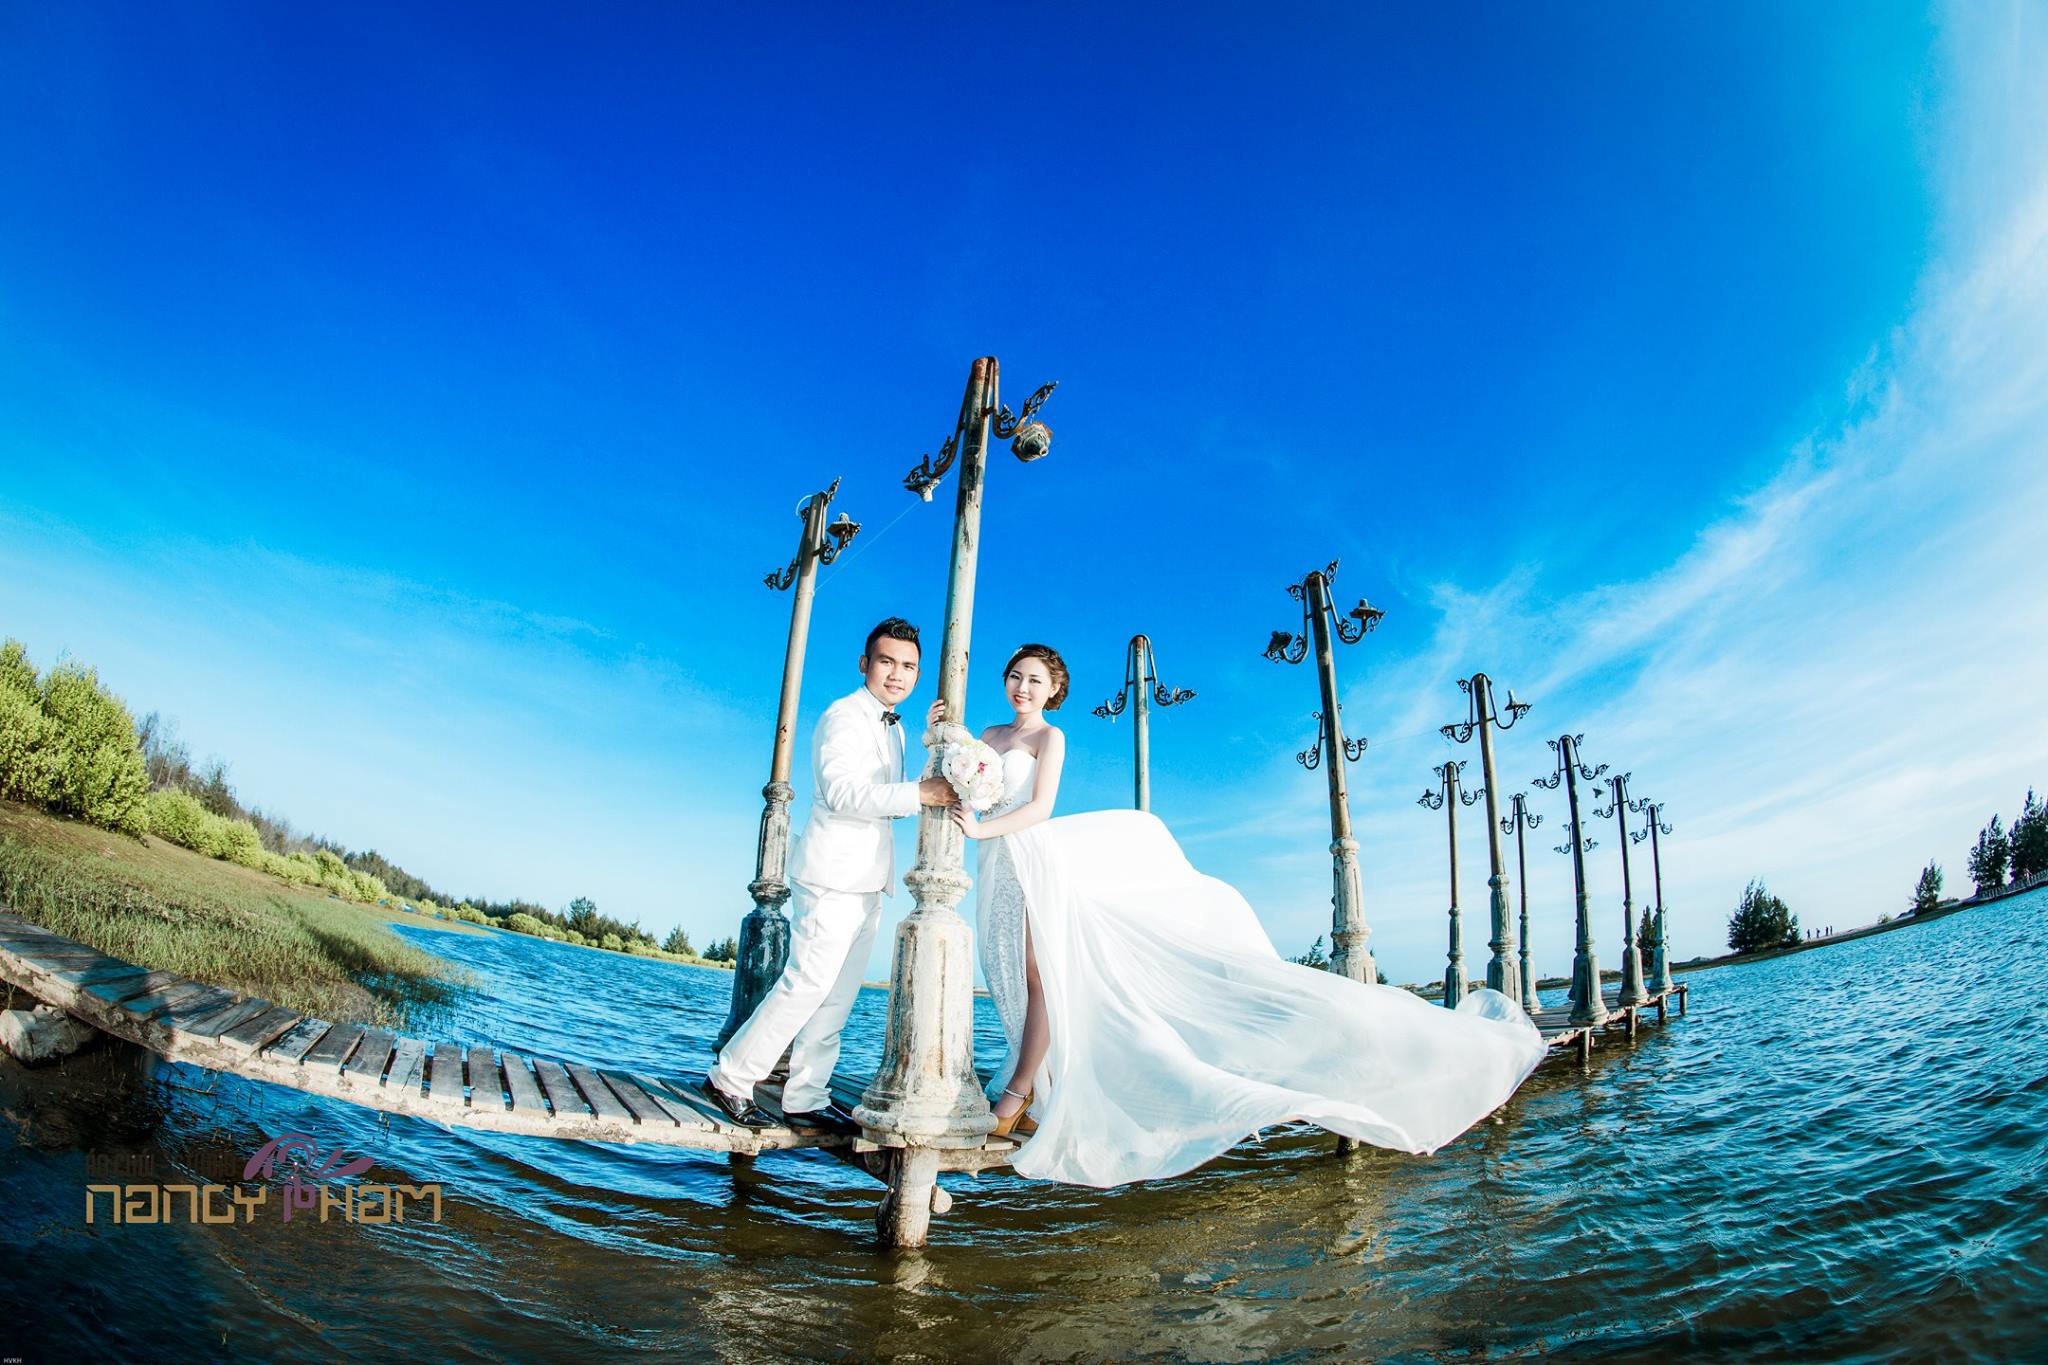 Hồ cốc - Vũng Tàu - Nancy Phạm Bridal